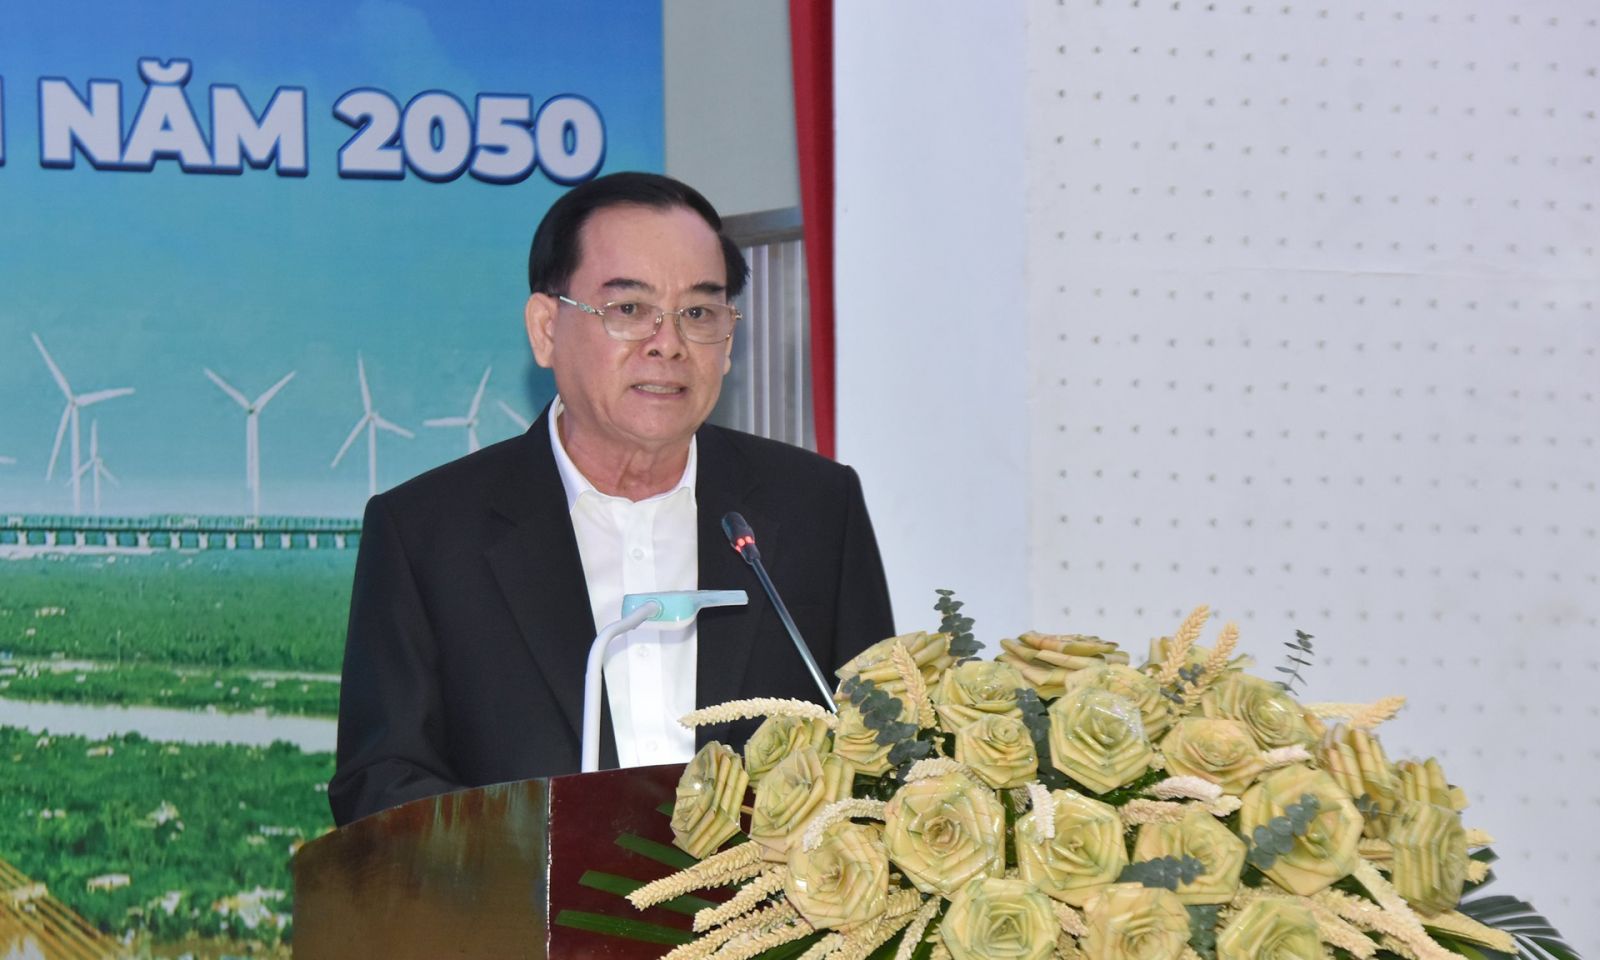 Chủ tịch UBND tỉnh Trần Ngọc Tam phát biểu khai mạc hội nghị.